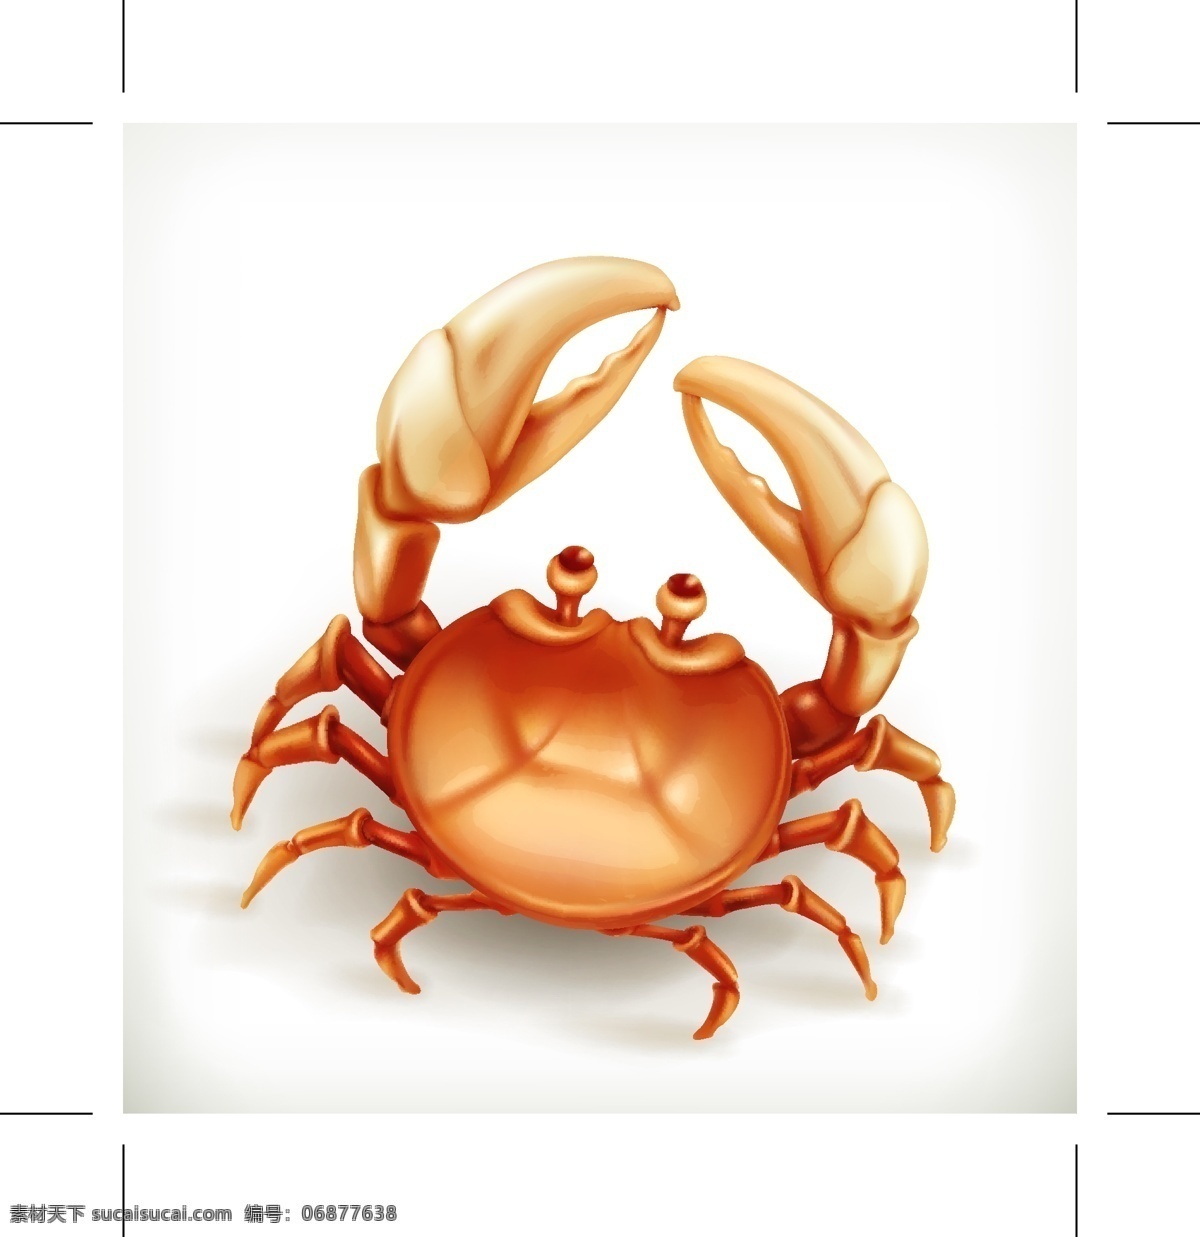 沙滩 螃蟹 矢量 动物 海边 度假 装饰 创意 涂鸦 小清新 卡通 填充 插画 背景 海报 广告 包装 印刷 夏天 高清